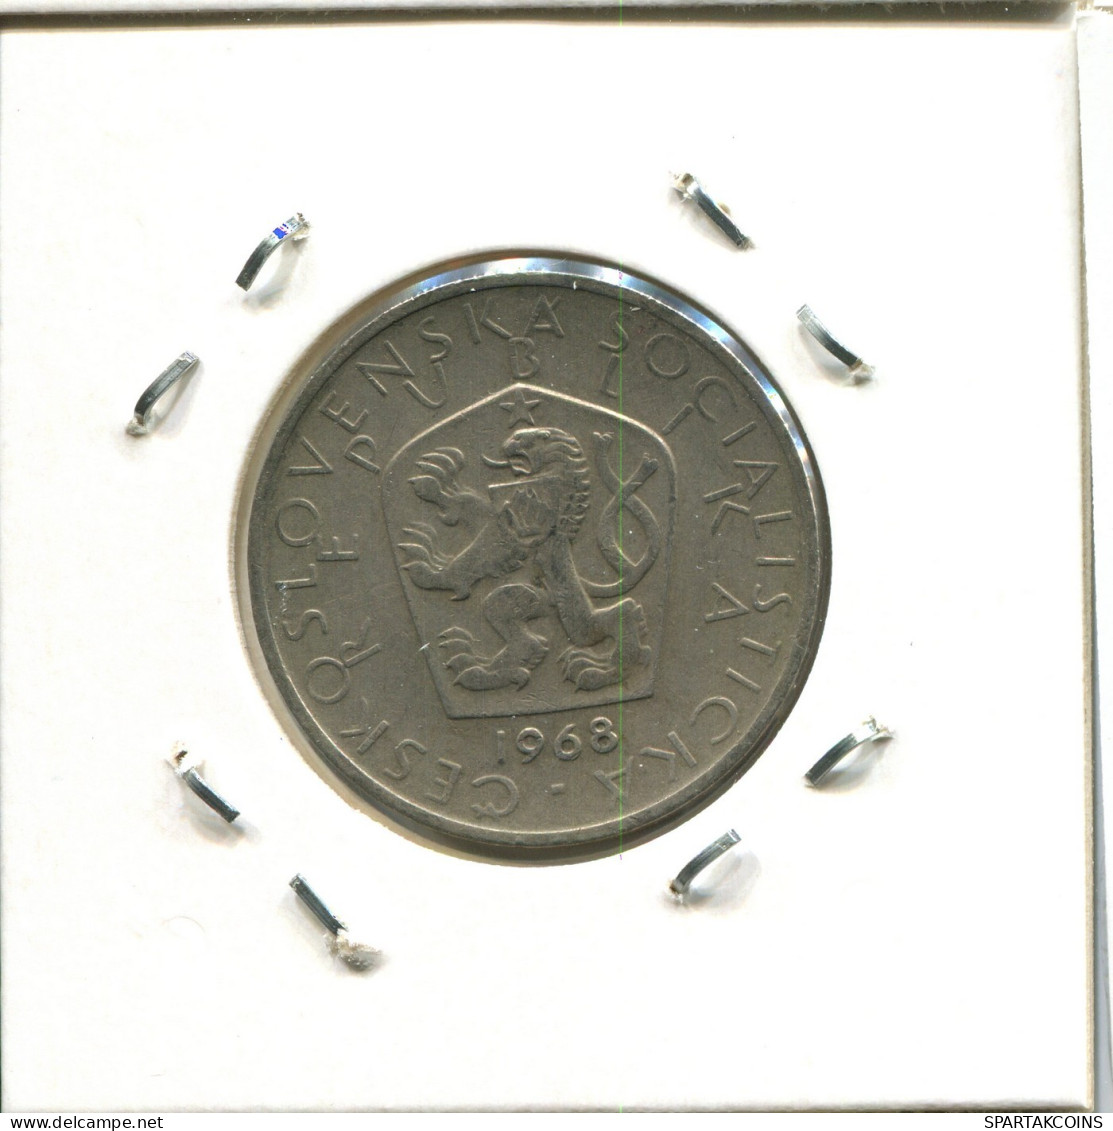 5 KORUN 1968 TSCHECHOSLOWAKEI CZECHOSLOWAKEI SLOVAKIA Münze #AW848.D.A - Tchécoslovaquie